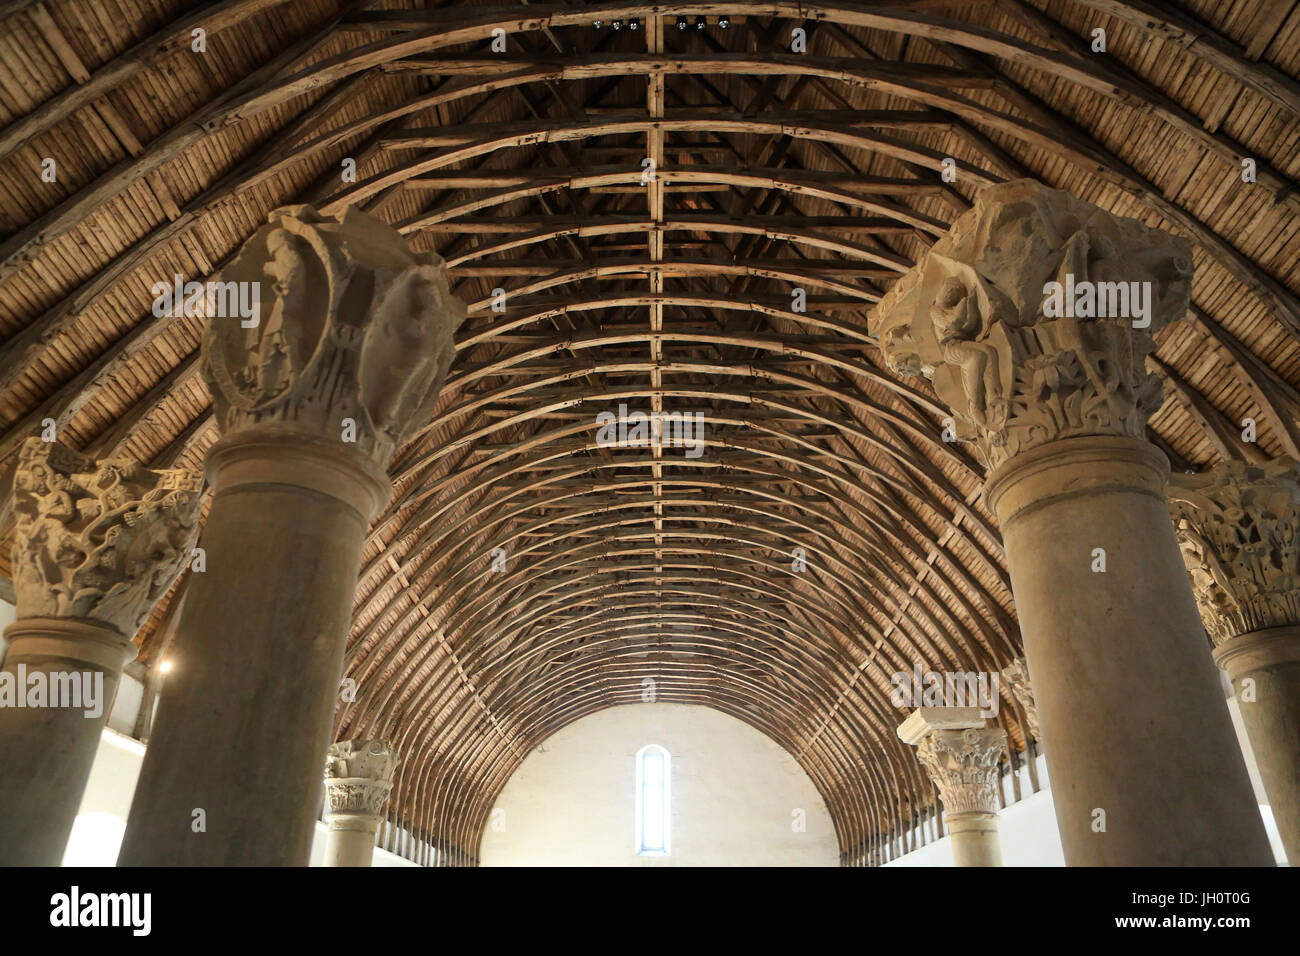 Le meunier de l'abbaye et les chapiteaux romans de la chorale. L'Abbaye de Cluny. Cluny a été fondée en 910. La France. Banque D'Images